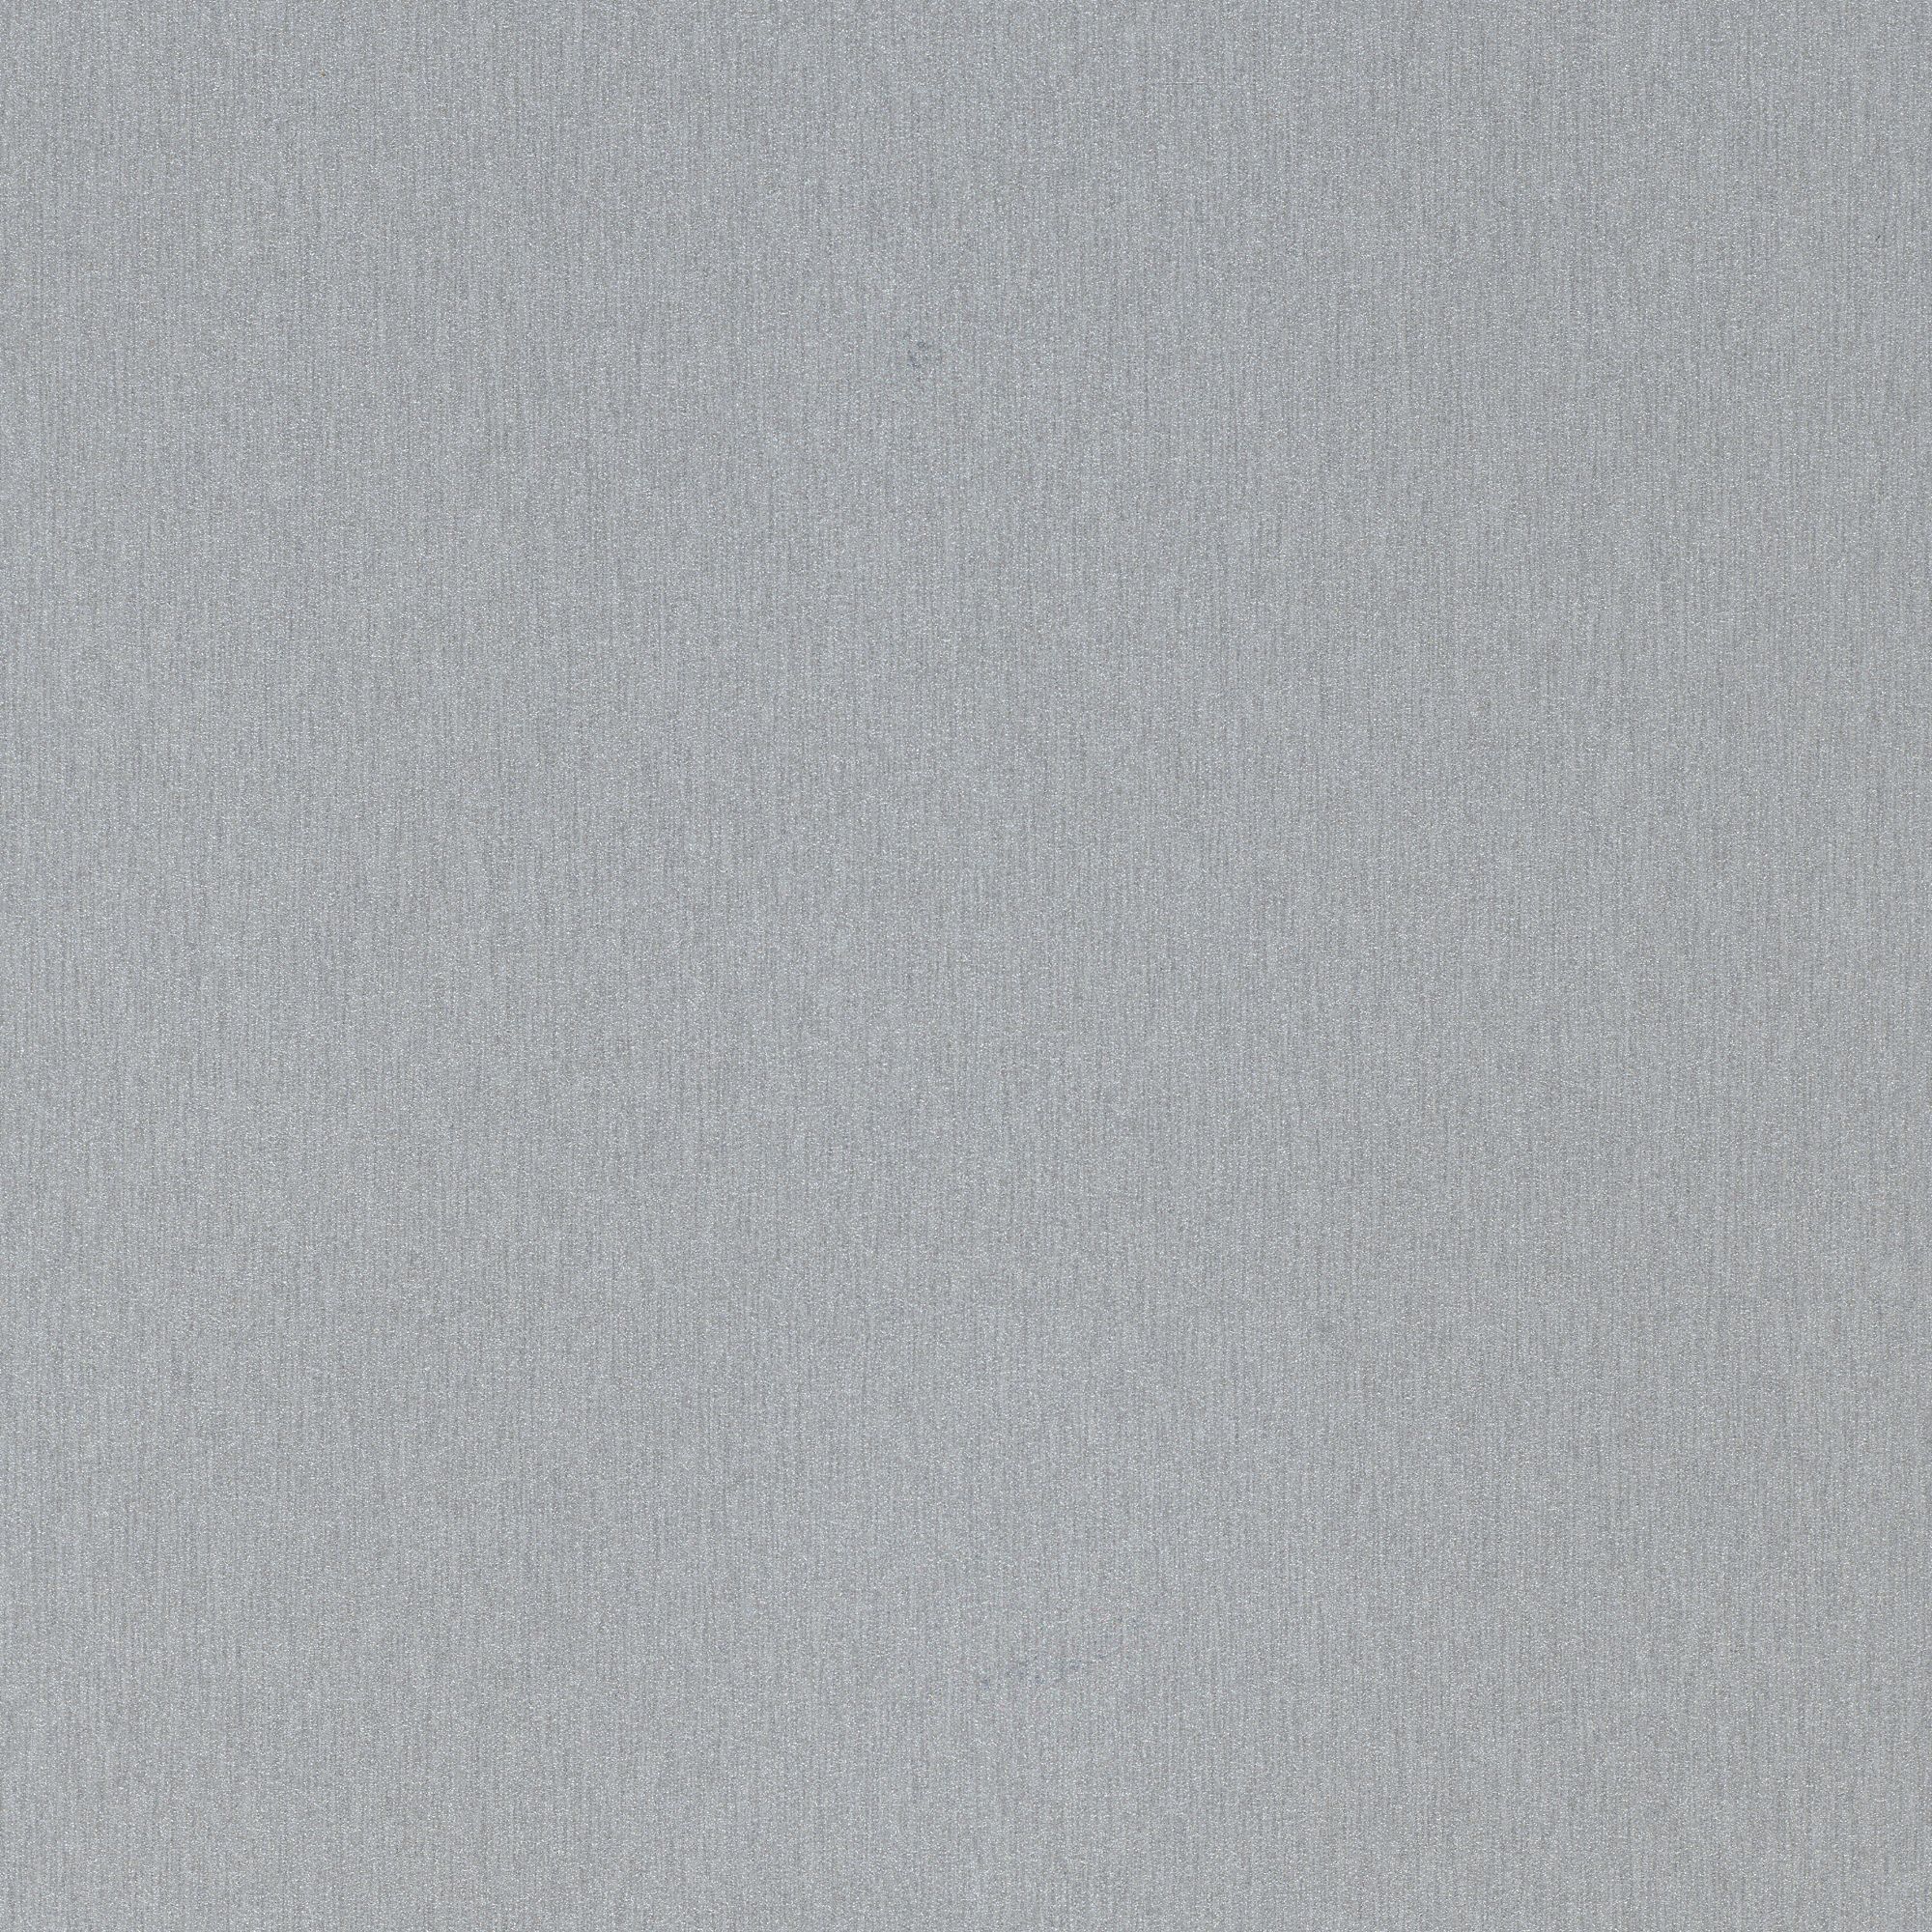 Splashwall Impressions Gloss Metallic grey MDF Panel (W)120cm x (H)242cm x (D)11mm